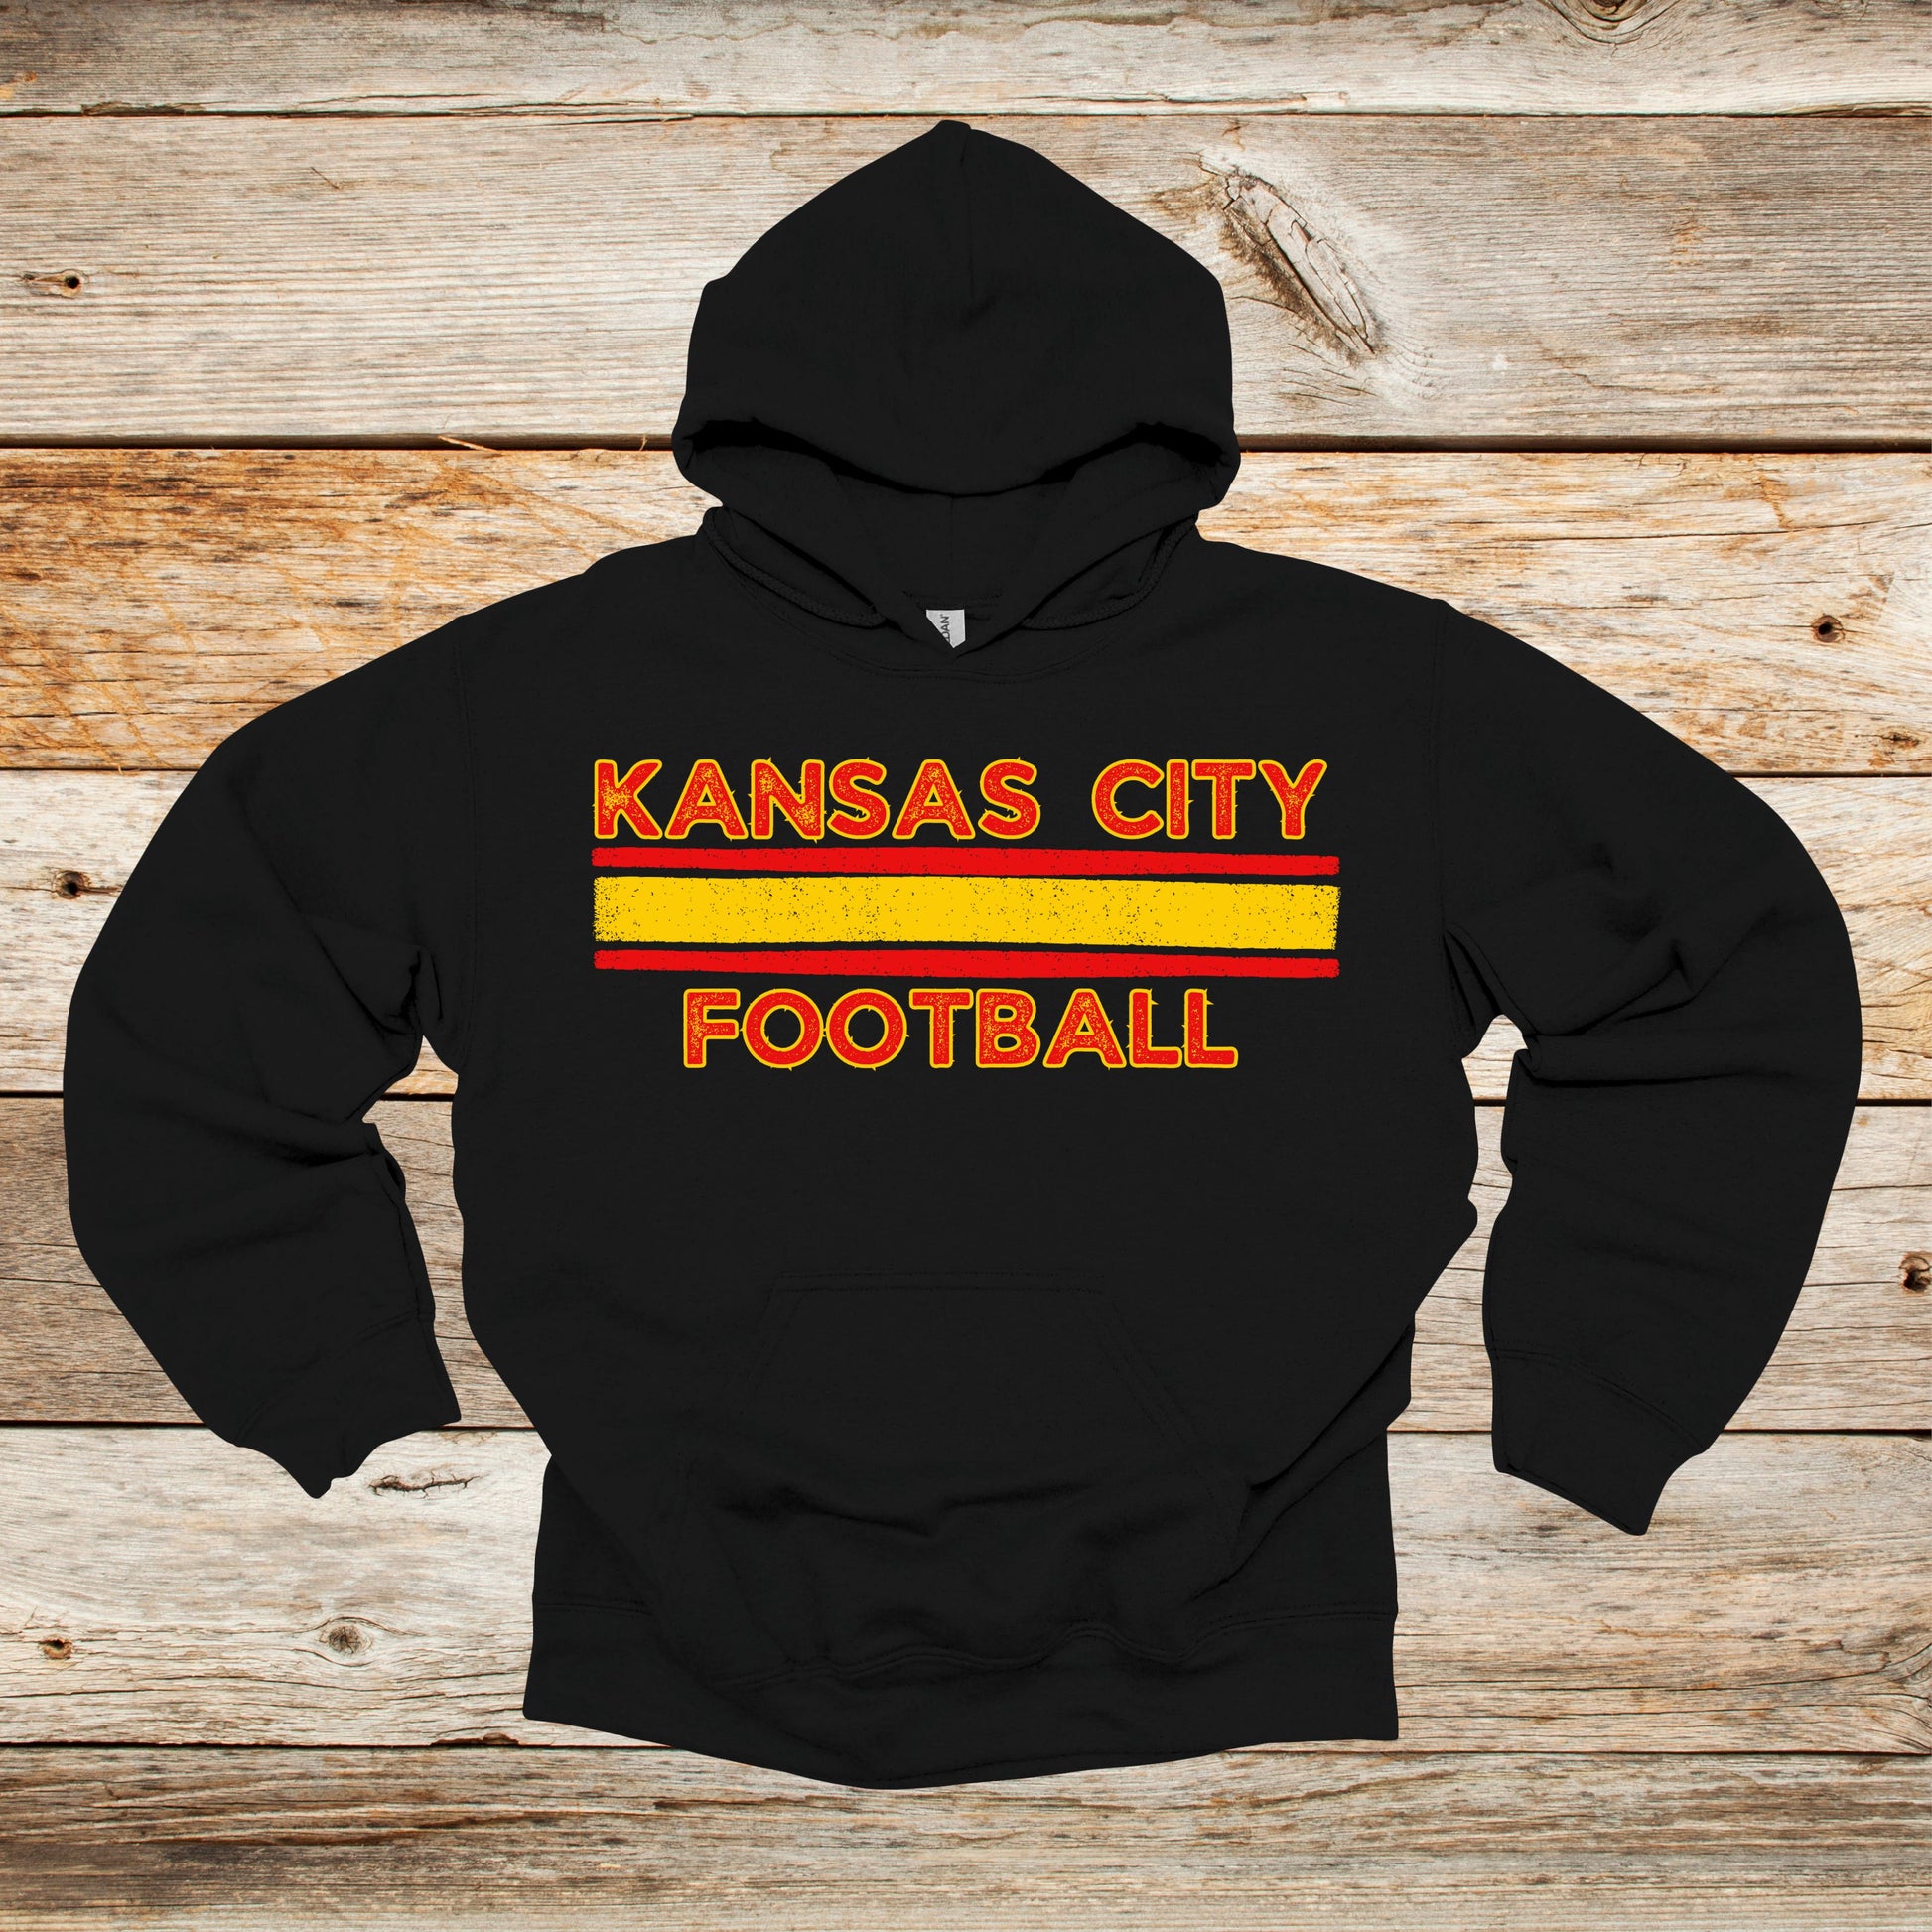 Football Crewneck and Hooded Sweatshirt - Kansas City Chiefs - Kansas City Football - Adult and Children's Tee Shirts - Sports Hooded Sweatshirt Graphic Avenue Hooded Sweatshirt Black Adult Small